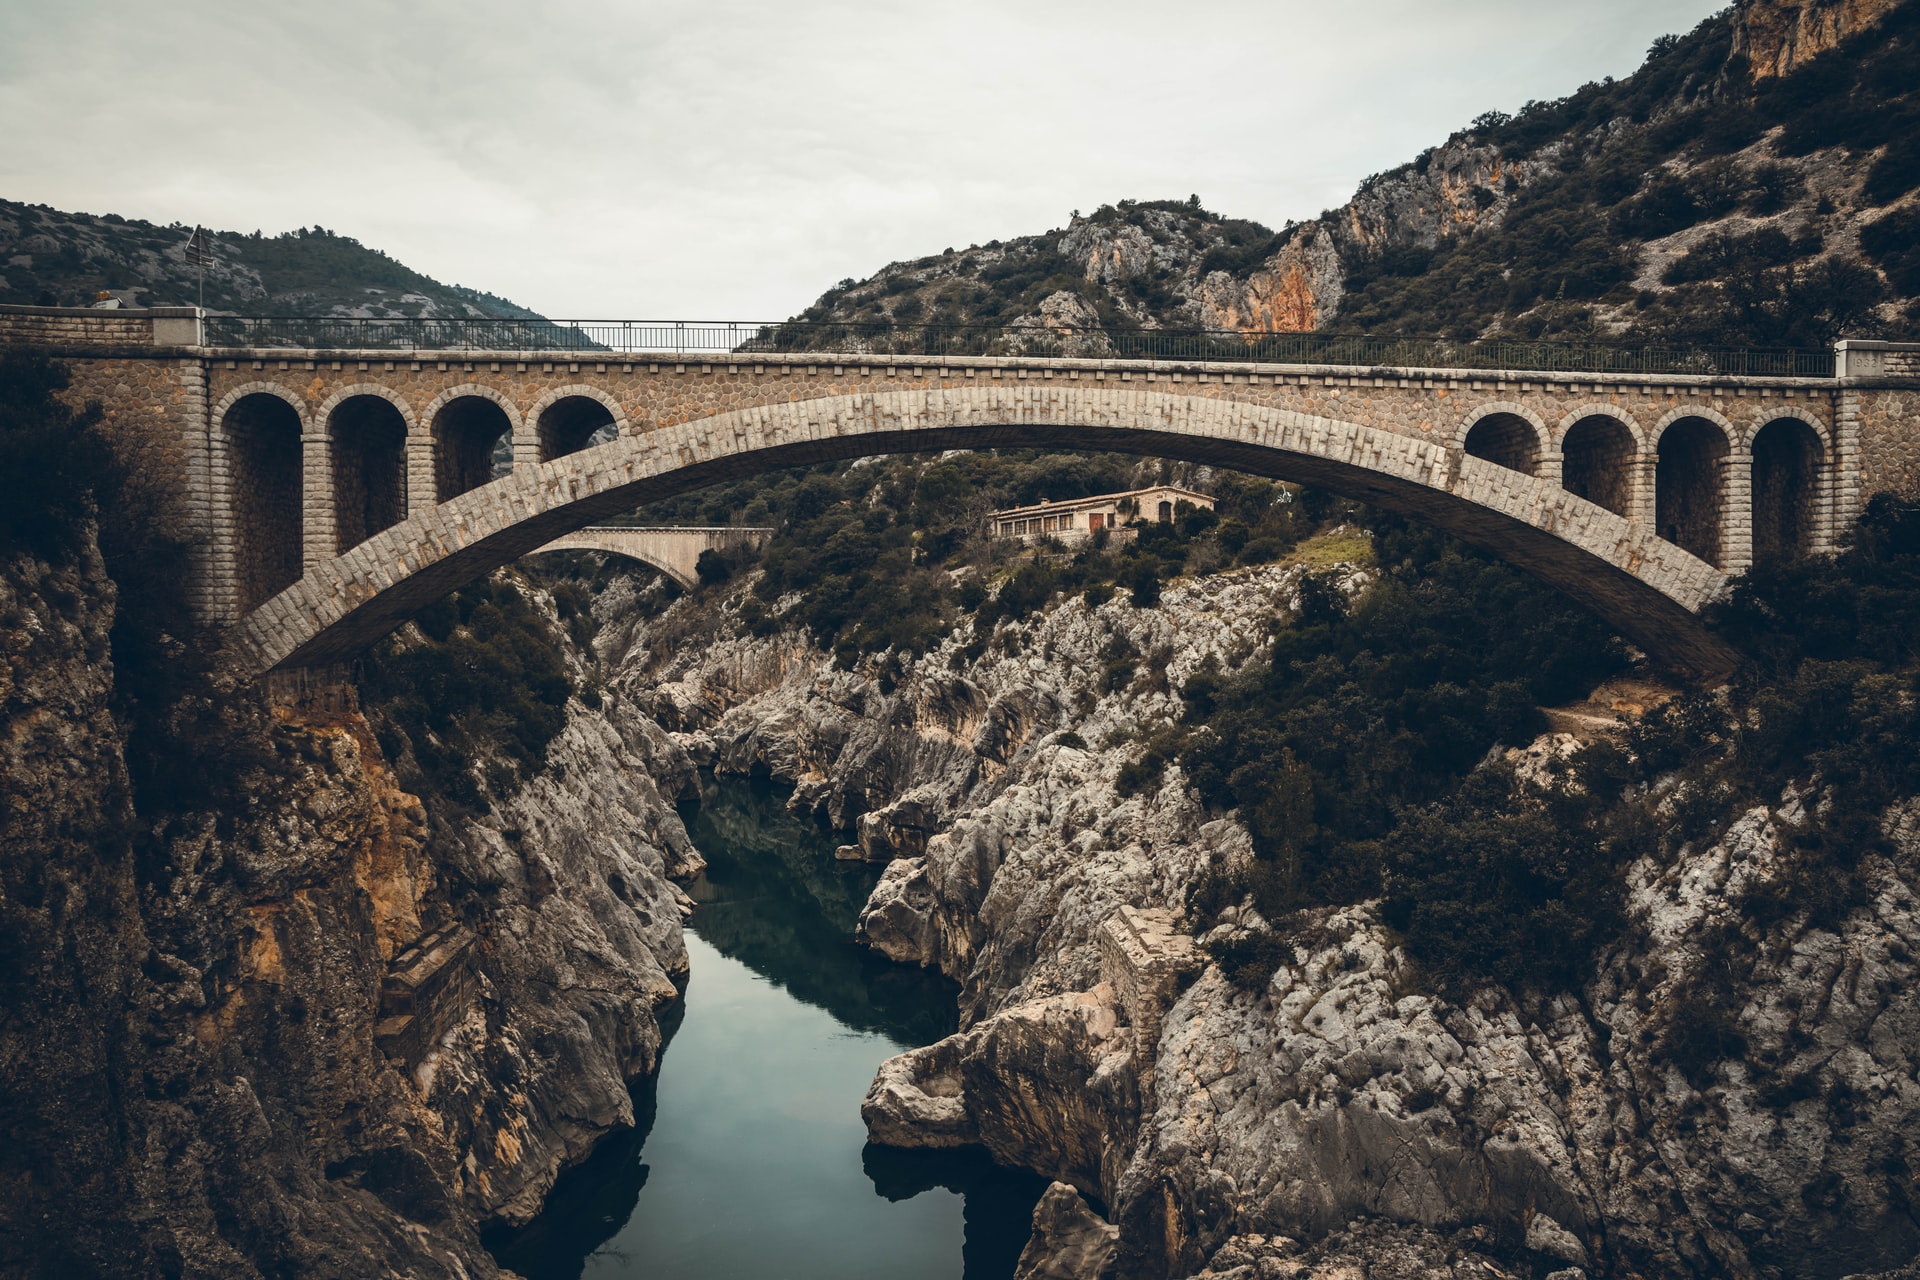 A bridge over a river in a rocky mountainous area